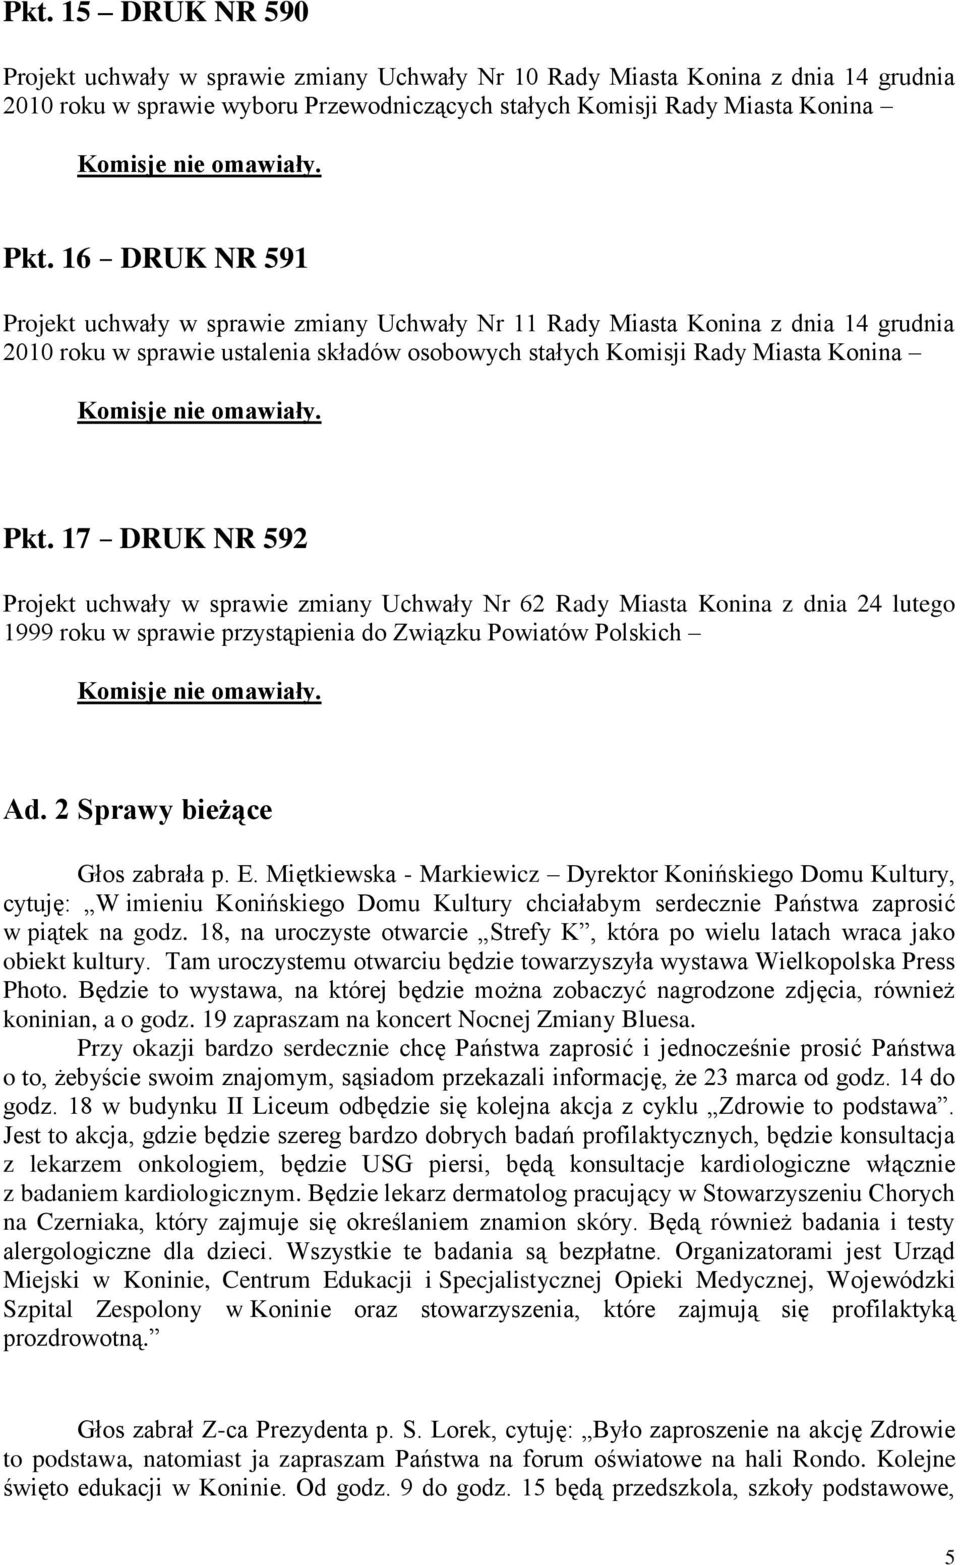 17 DRUK NR 592 Projekt uchwały w sprawie zmiany Uchwały Nr 62 Rady Miasta Konina z dnia 24 lutego 1999 roku w sprawie przystąpienia do Związku Powiatów Polskich Ad. 2 Sprawy bieżące Głos zabrała p. E.